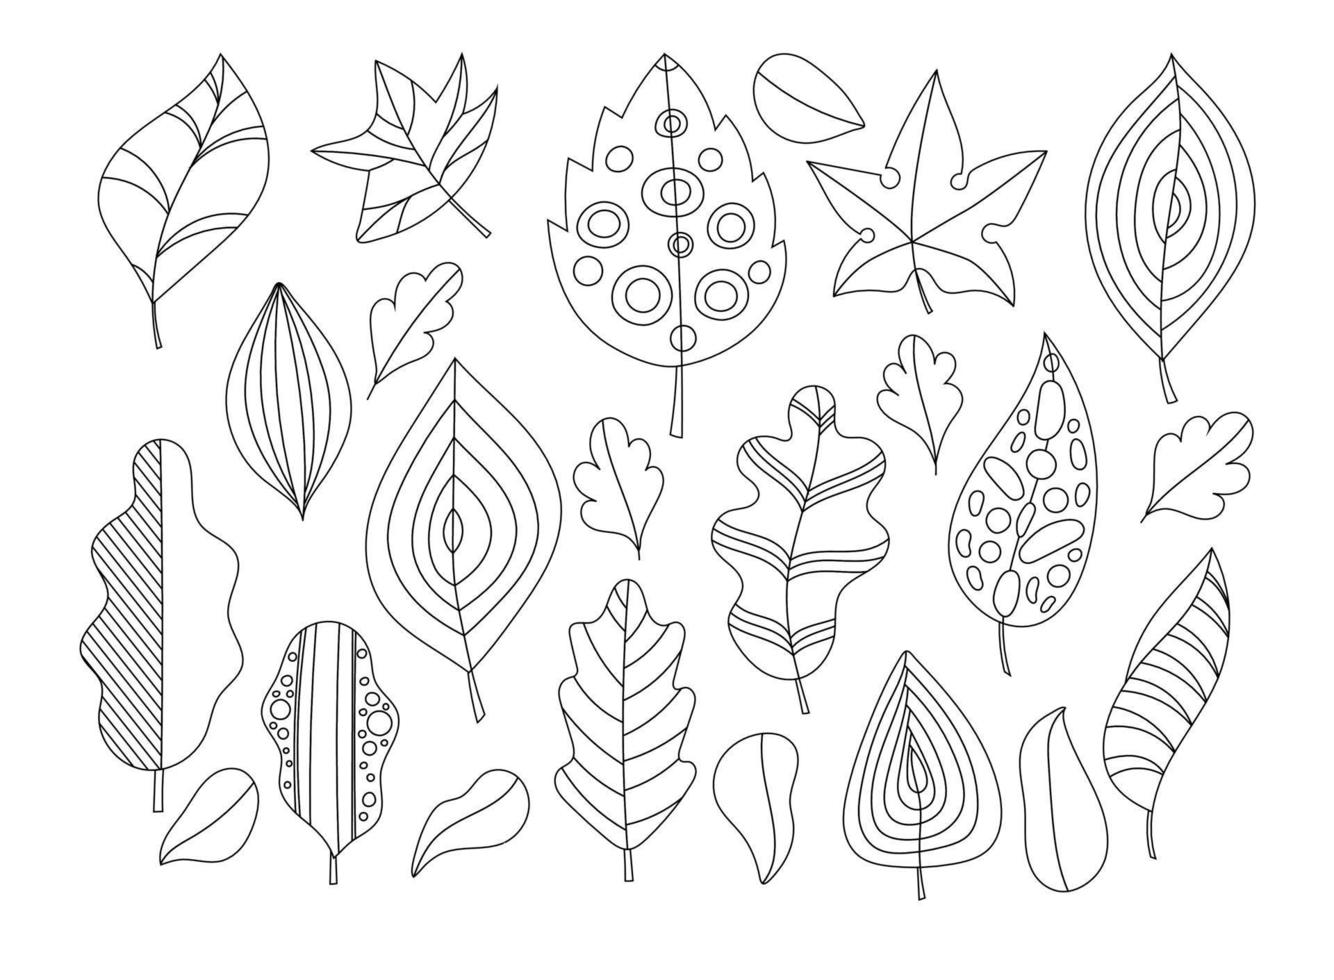 jeu de feuilles de doodle de vecteur. ensemble de feuilles d'automne noir et blanc dessinées à la main. coloriage pour enfants et adultes vecteur